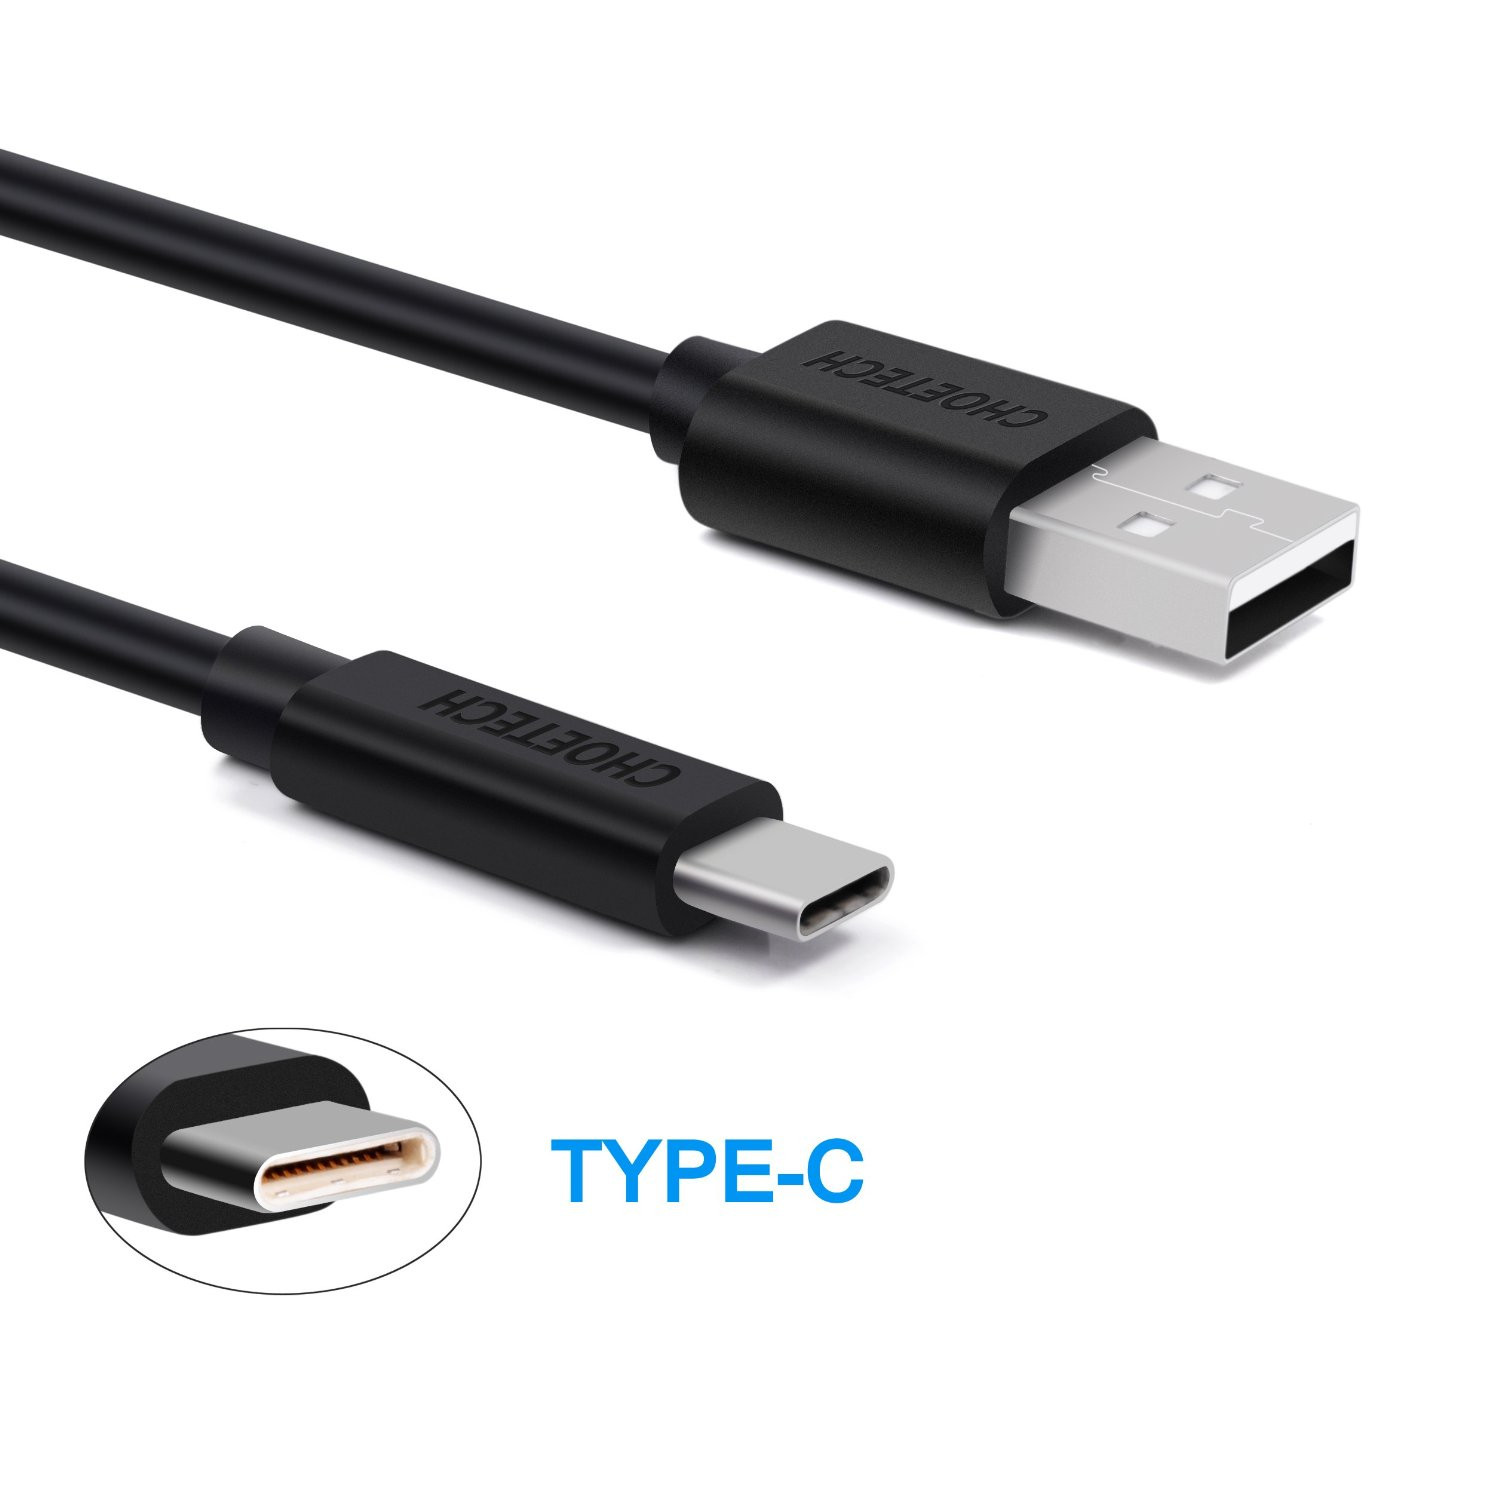 Dây Cáp Sạc Điện Thoại USB to USB Type C 30W Dài 0.5M Đến 2M CHOETECH AC0001/AC0002/AC0003 - Hàng Chính Hãng